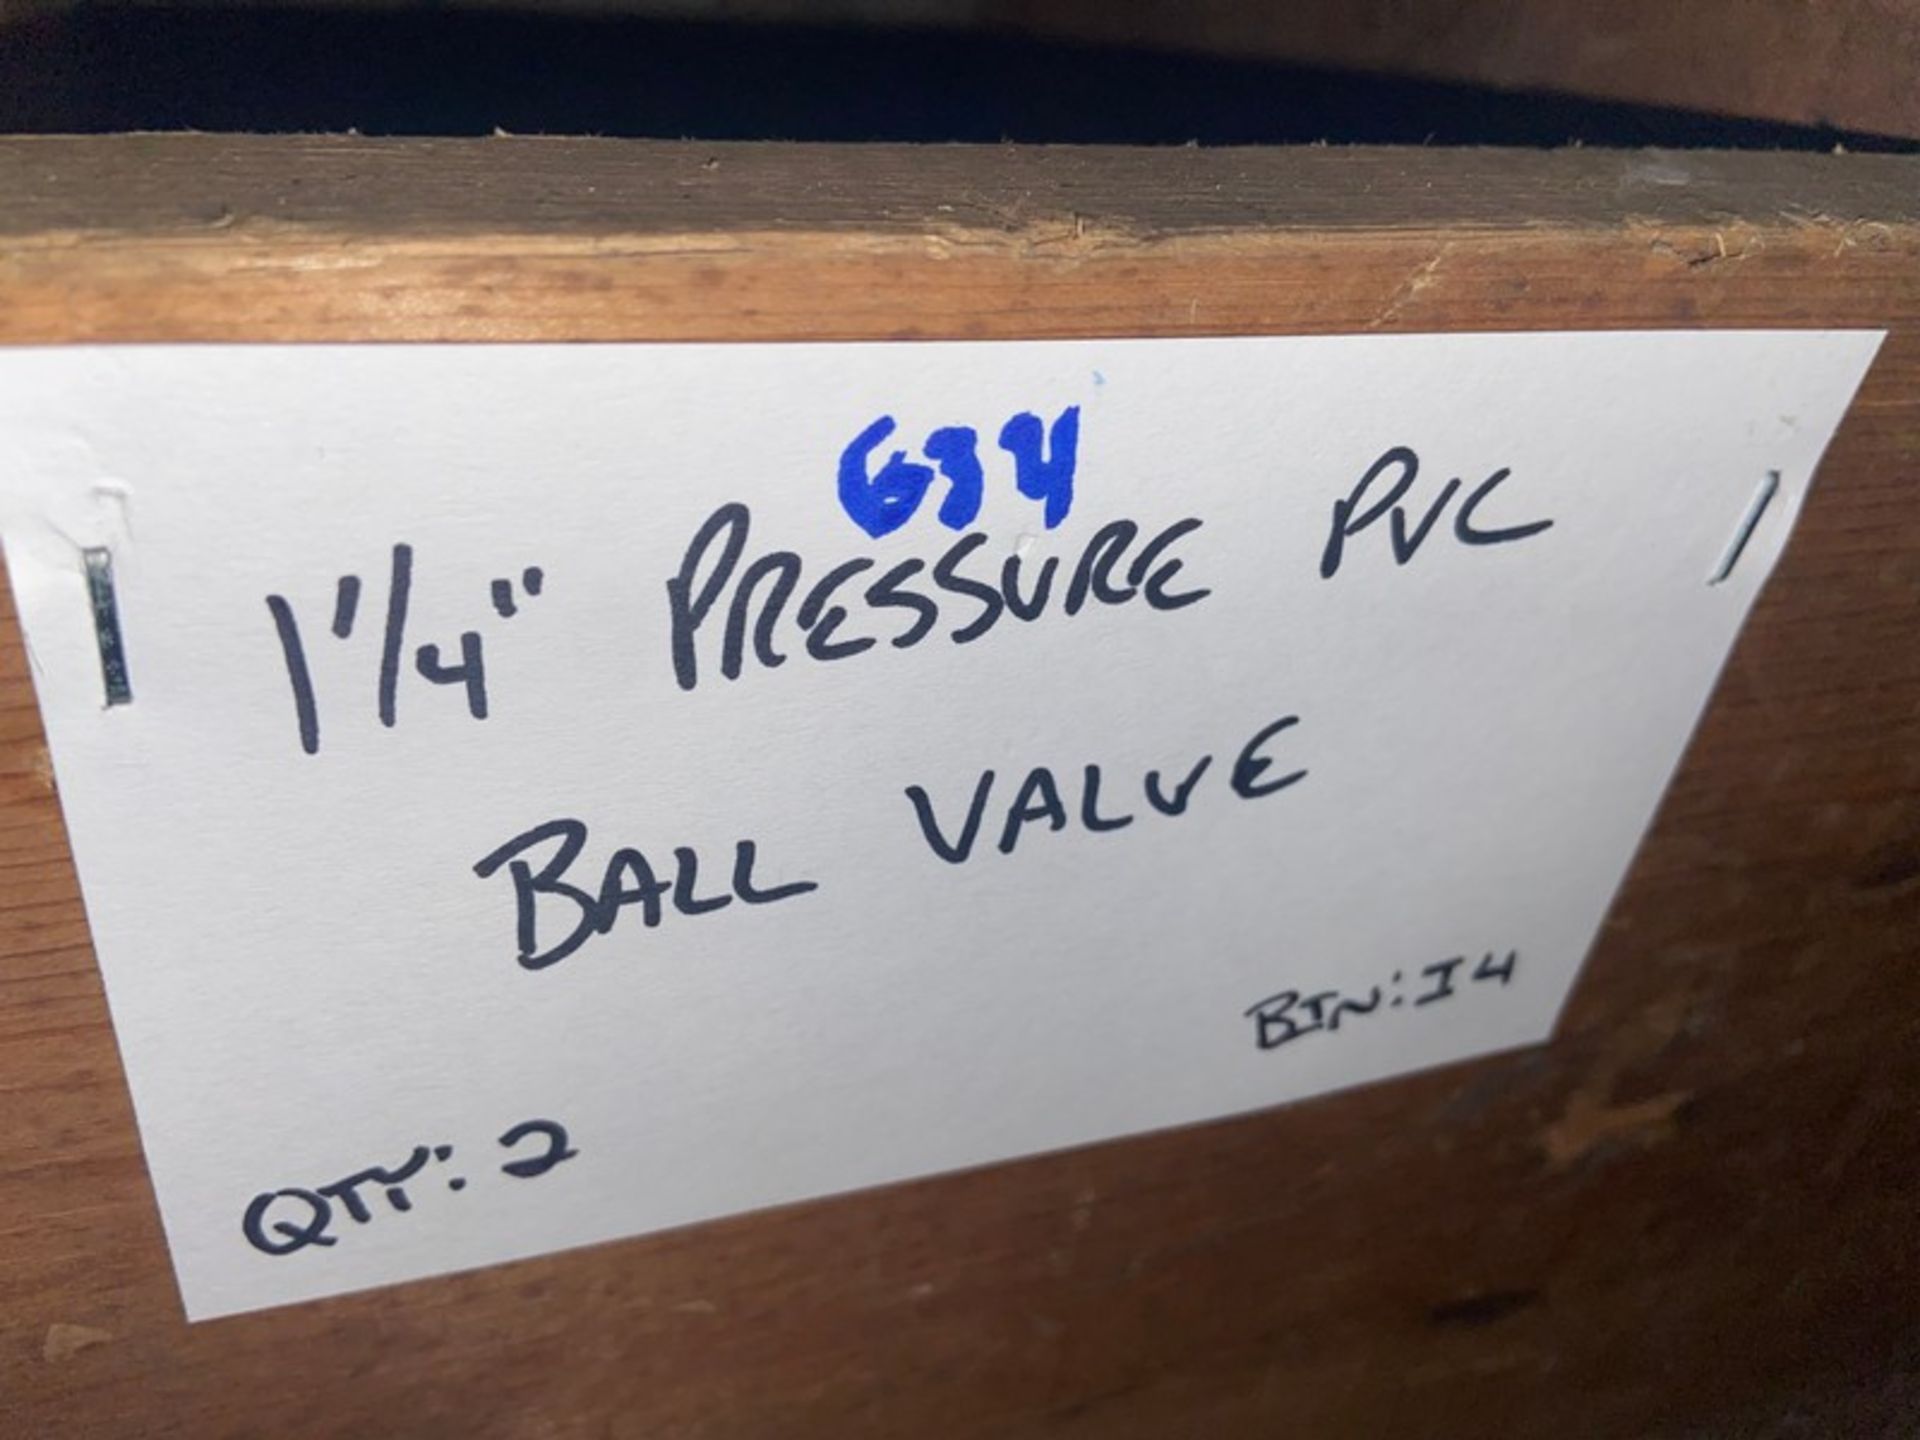 (9) 1 1/4” Pressure PVC COUPLING (Bin:I4); (2) 1 1/4” Pressure PVC Ball valve (Bin:I4)(LOCATED IN - Image 4 of 5